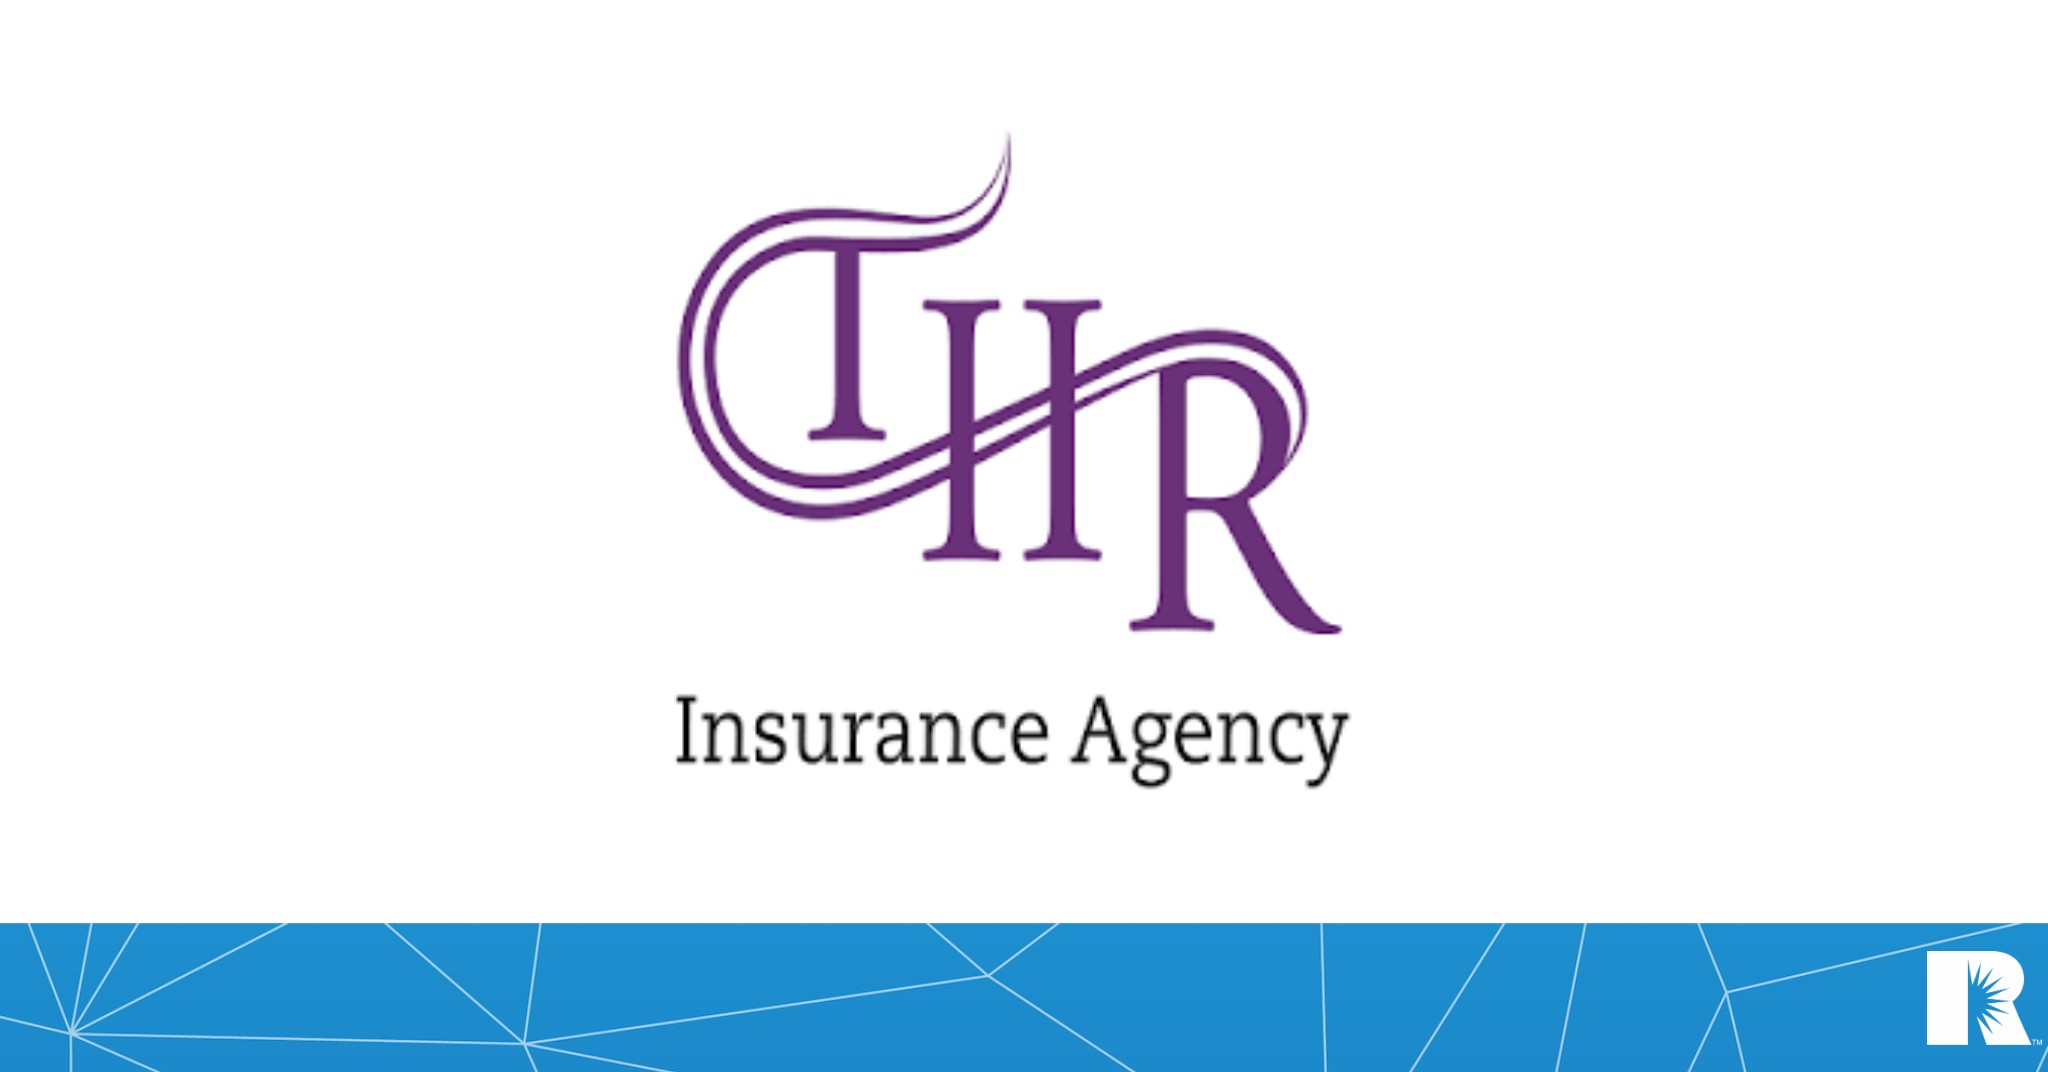 Logo for the THR Insurance Agency in Harleysville, Pennsylvania.